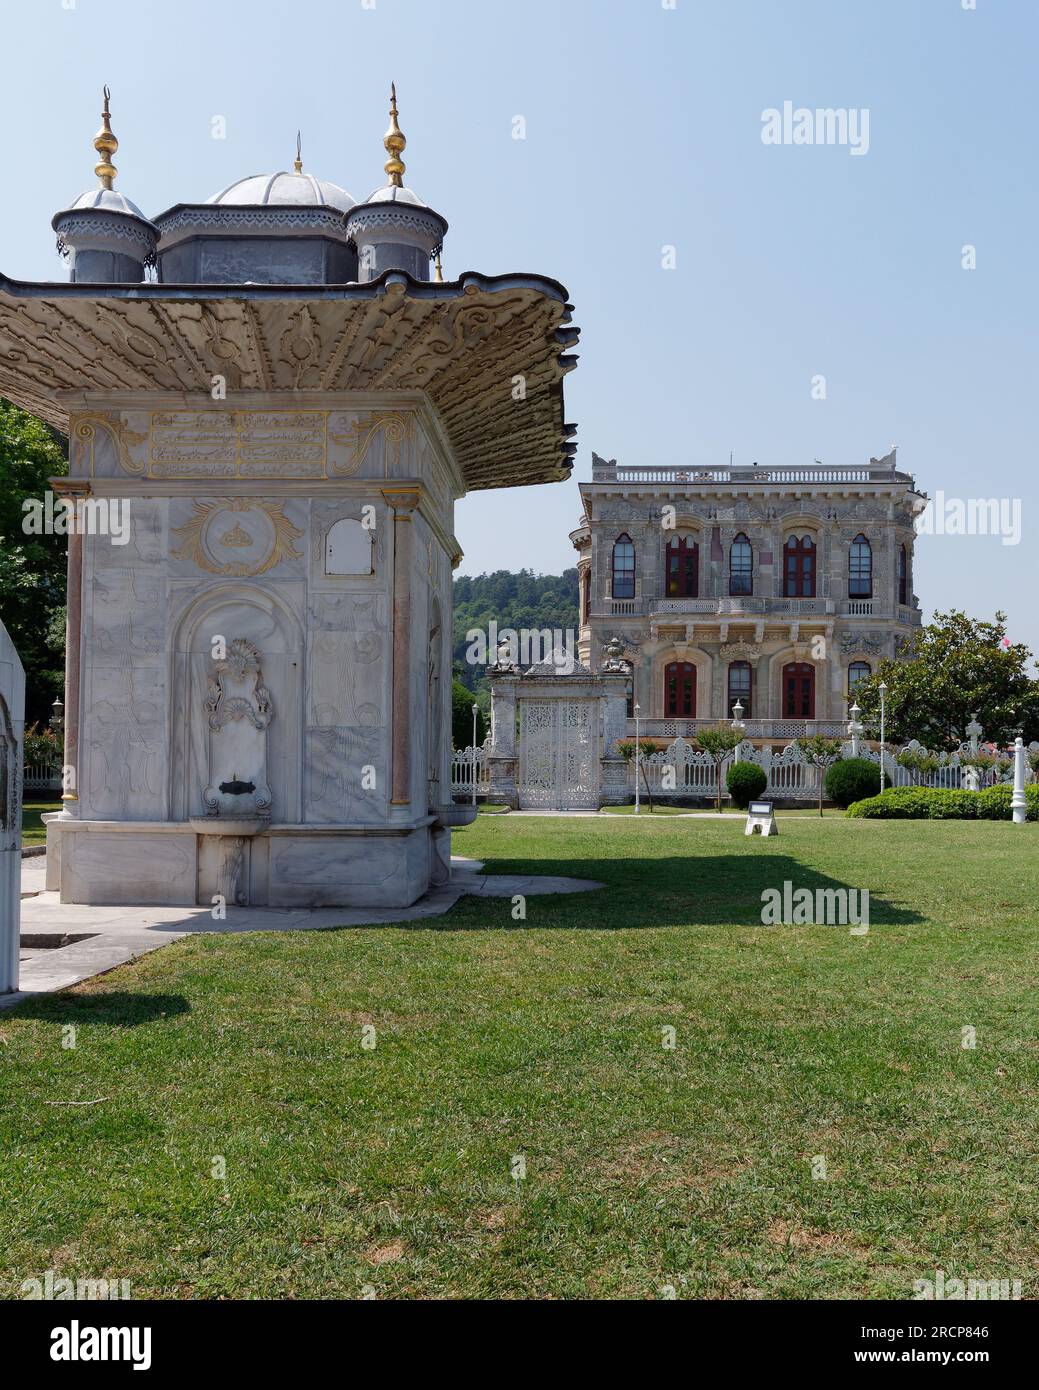 Brunnen vor dem Kucuksu Pavillon, einem opulenten Palast/Jagdhaus in der Nähe von Anadolu Hisari auf der östlichen Seite von Istanul neben dem Bosporus. Türkei Stockfoto